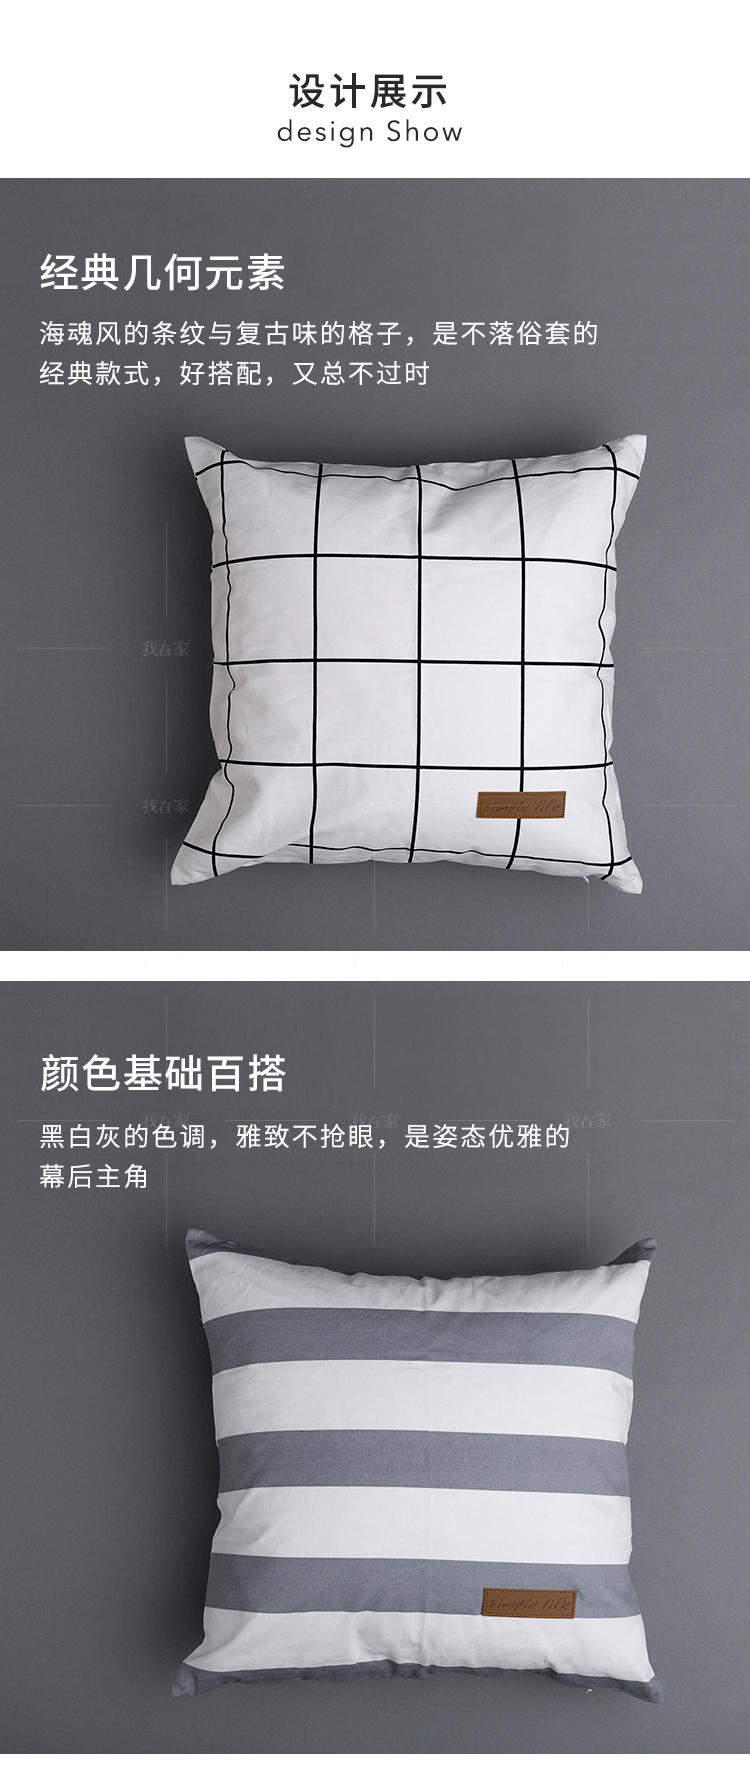 现代简约风格几何纯棉抱枕套的家具详细介绍